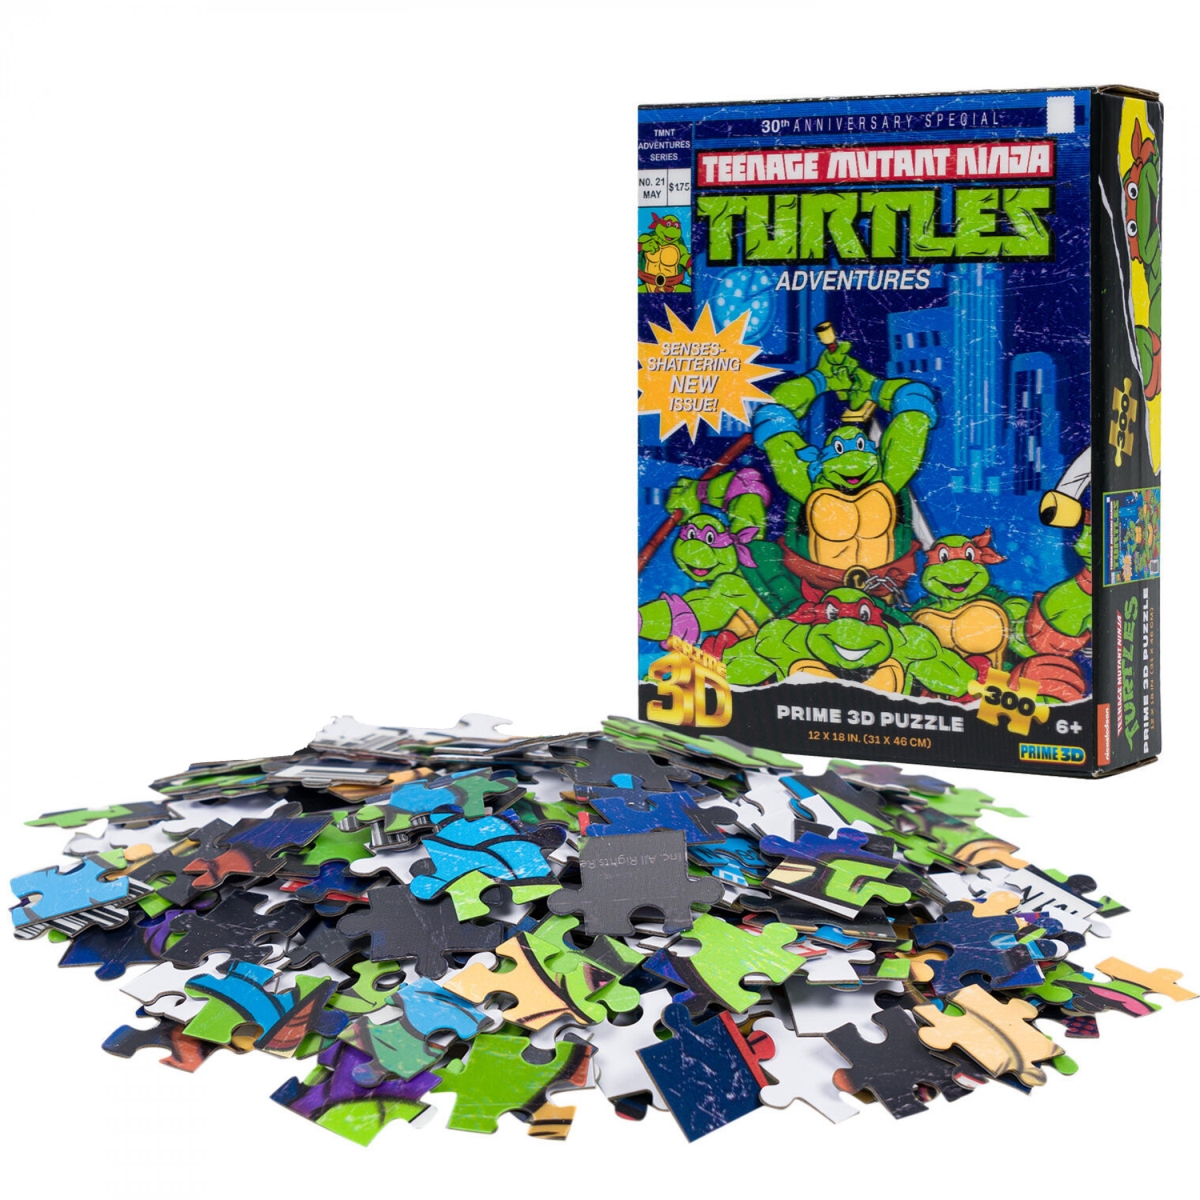 Picture of Teenage Mutant Ninja Turtles 875234 No. 21 Teenage Mutant Ninja Turtles Cover Puzzle - 300 Piece